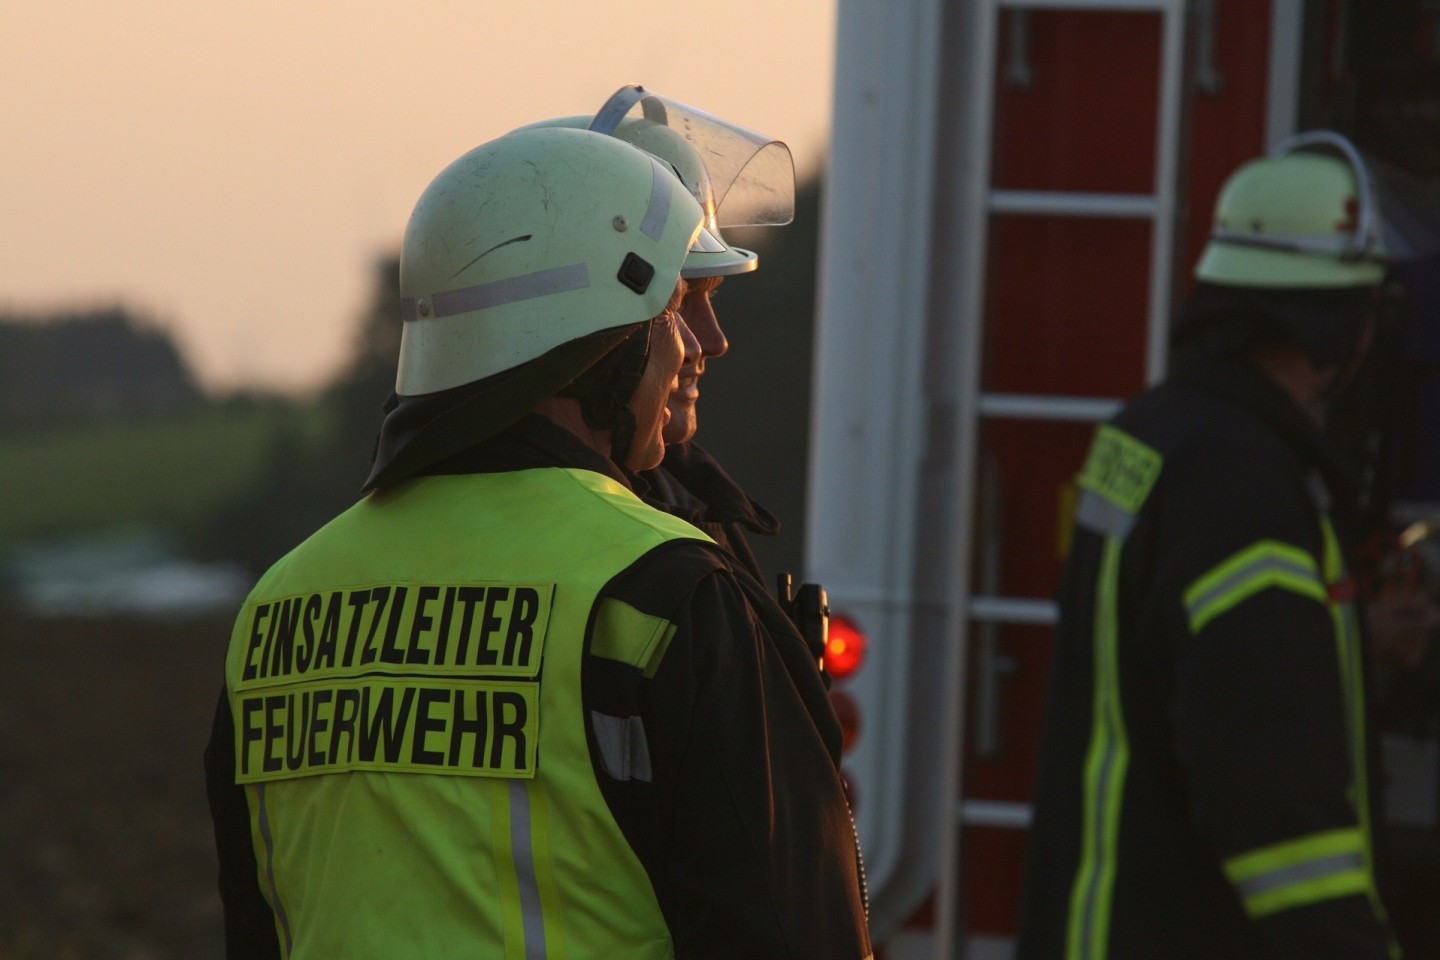 Die Feuerwehr möchte auf die Pflege und Wartung der Raumelder aufmerksam machen. / ©Pixabay.com